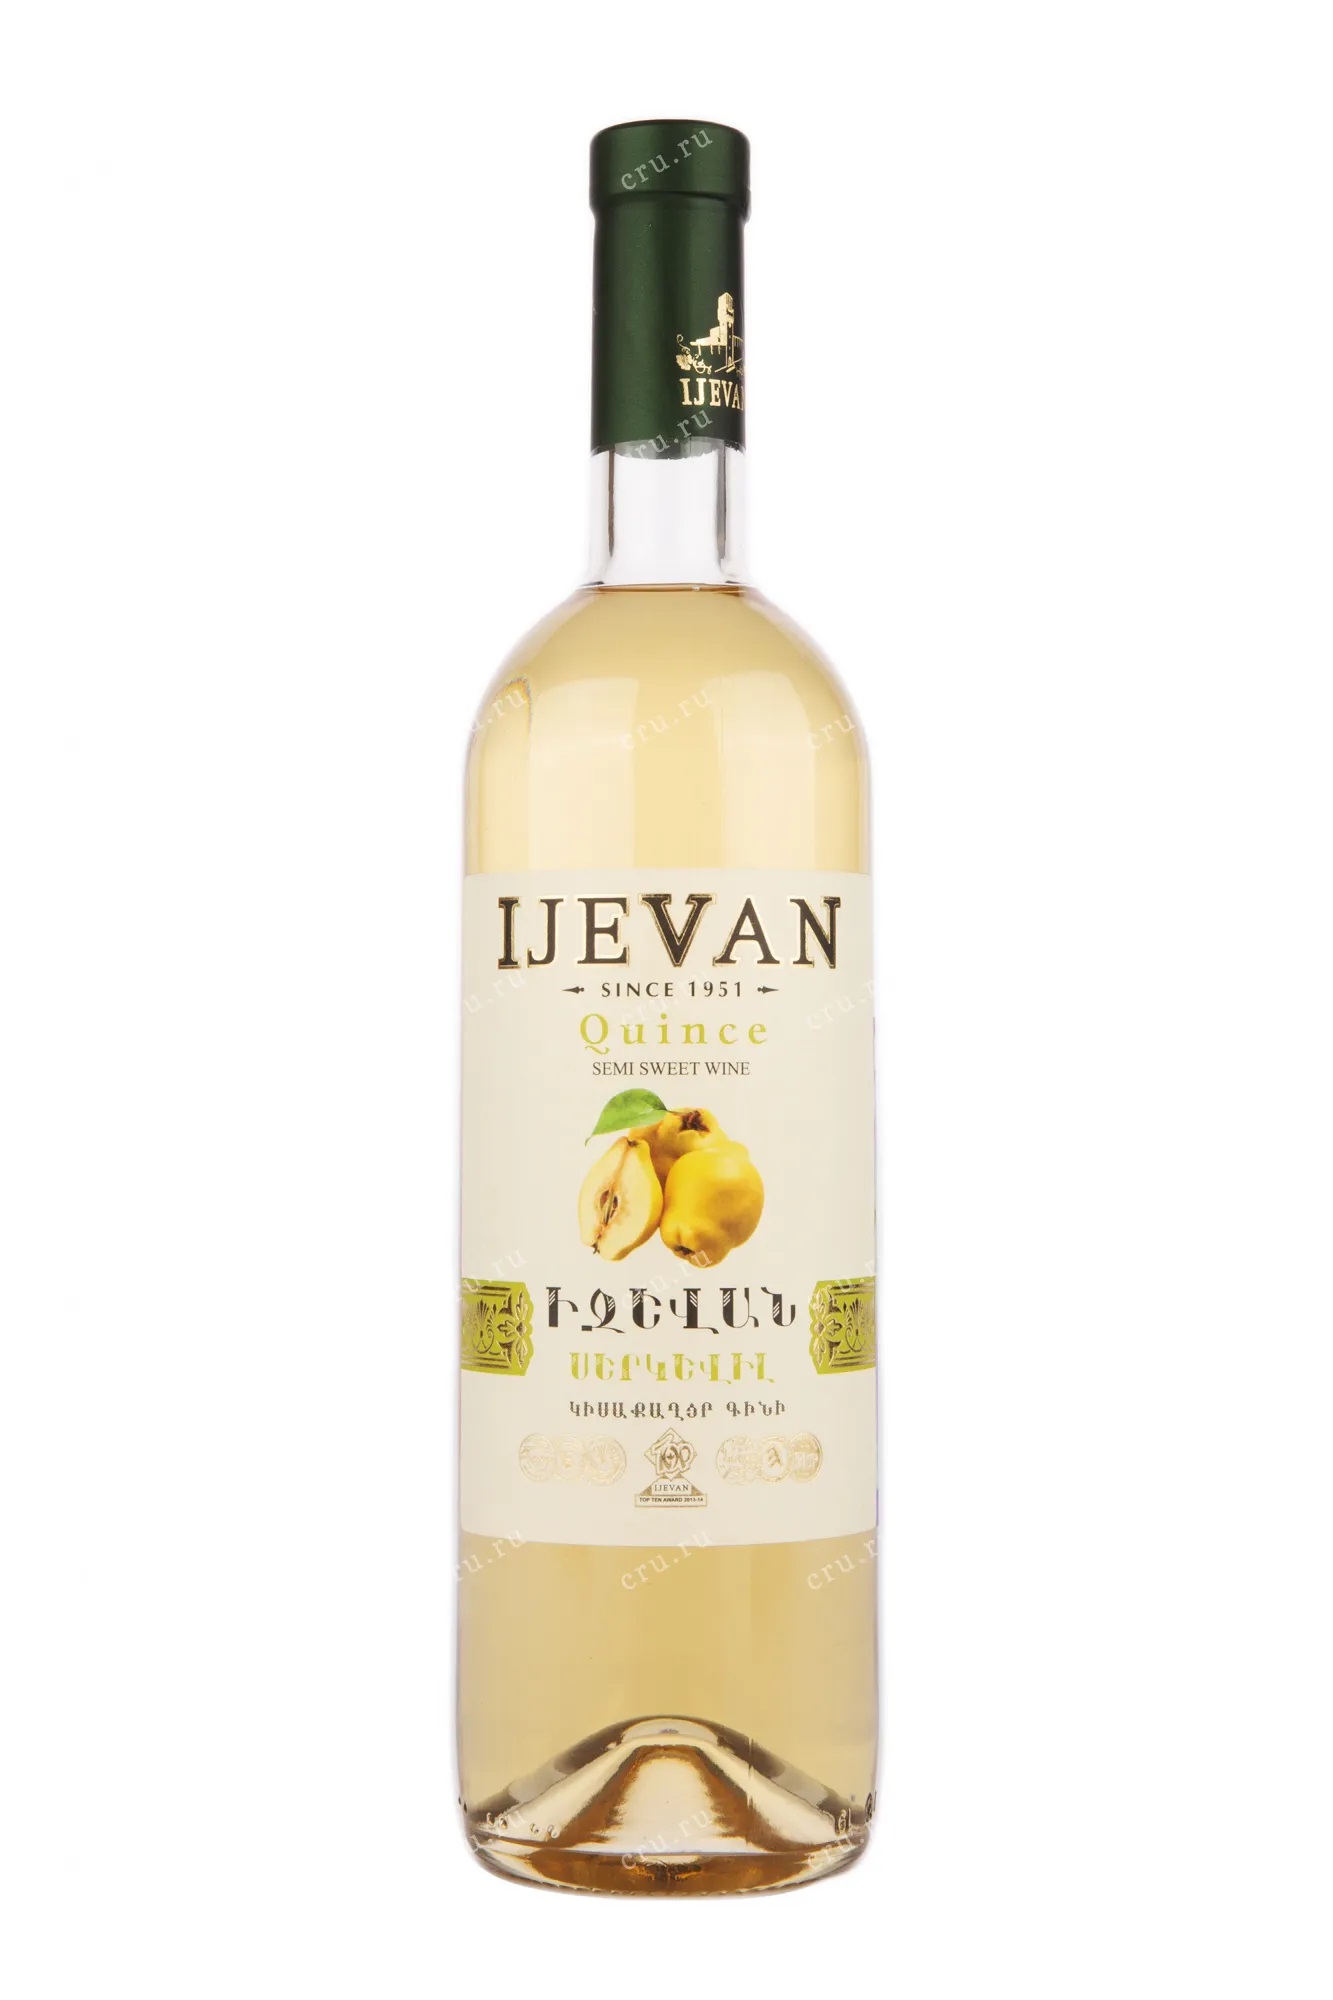 Алкогольная продукция плодовая полусладкая "QUINCE" ("Айва"), товарный знак "IJEVAN", креп 12%, емк 0,75л